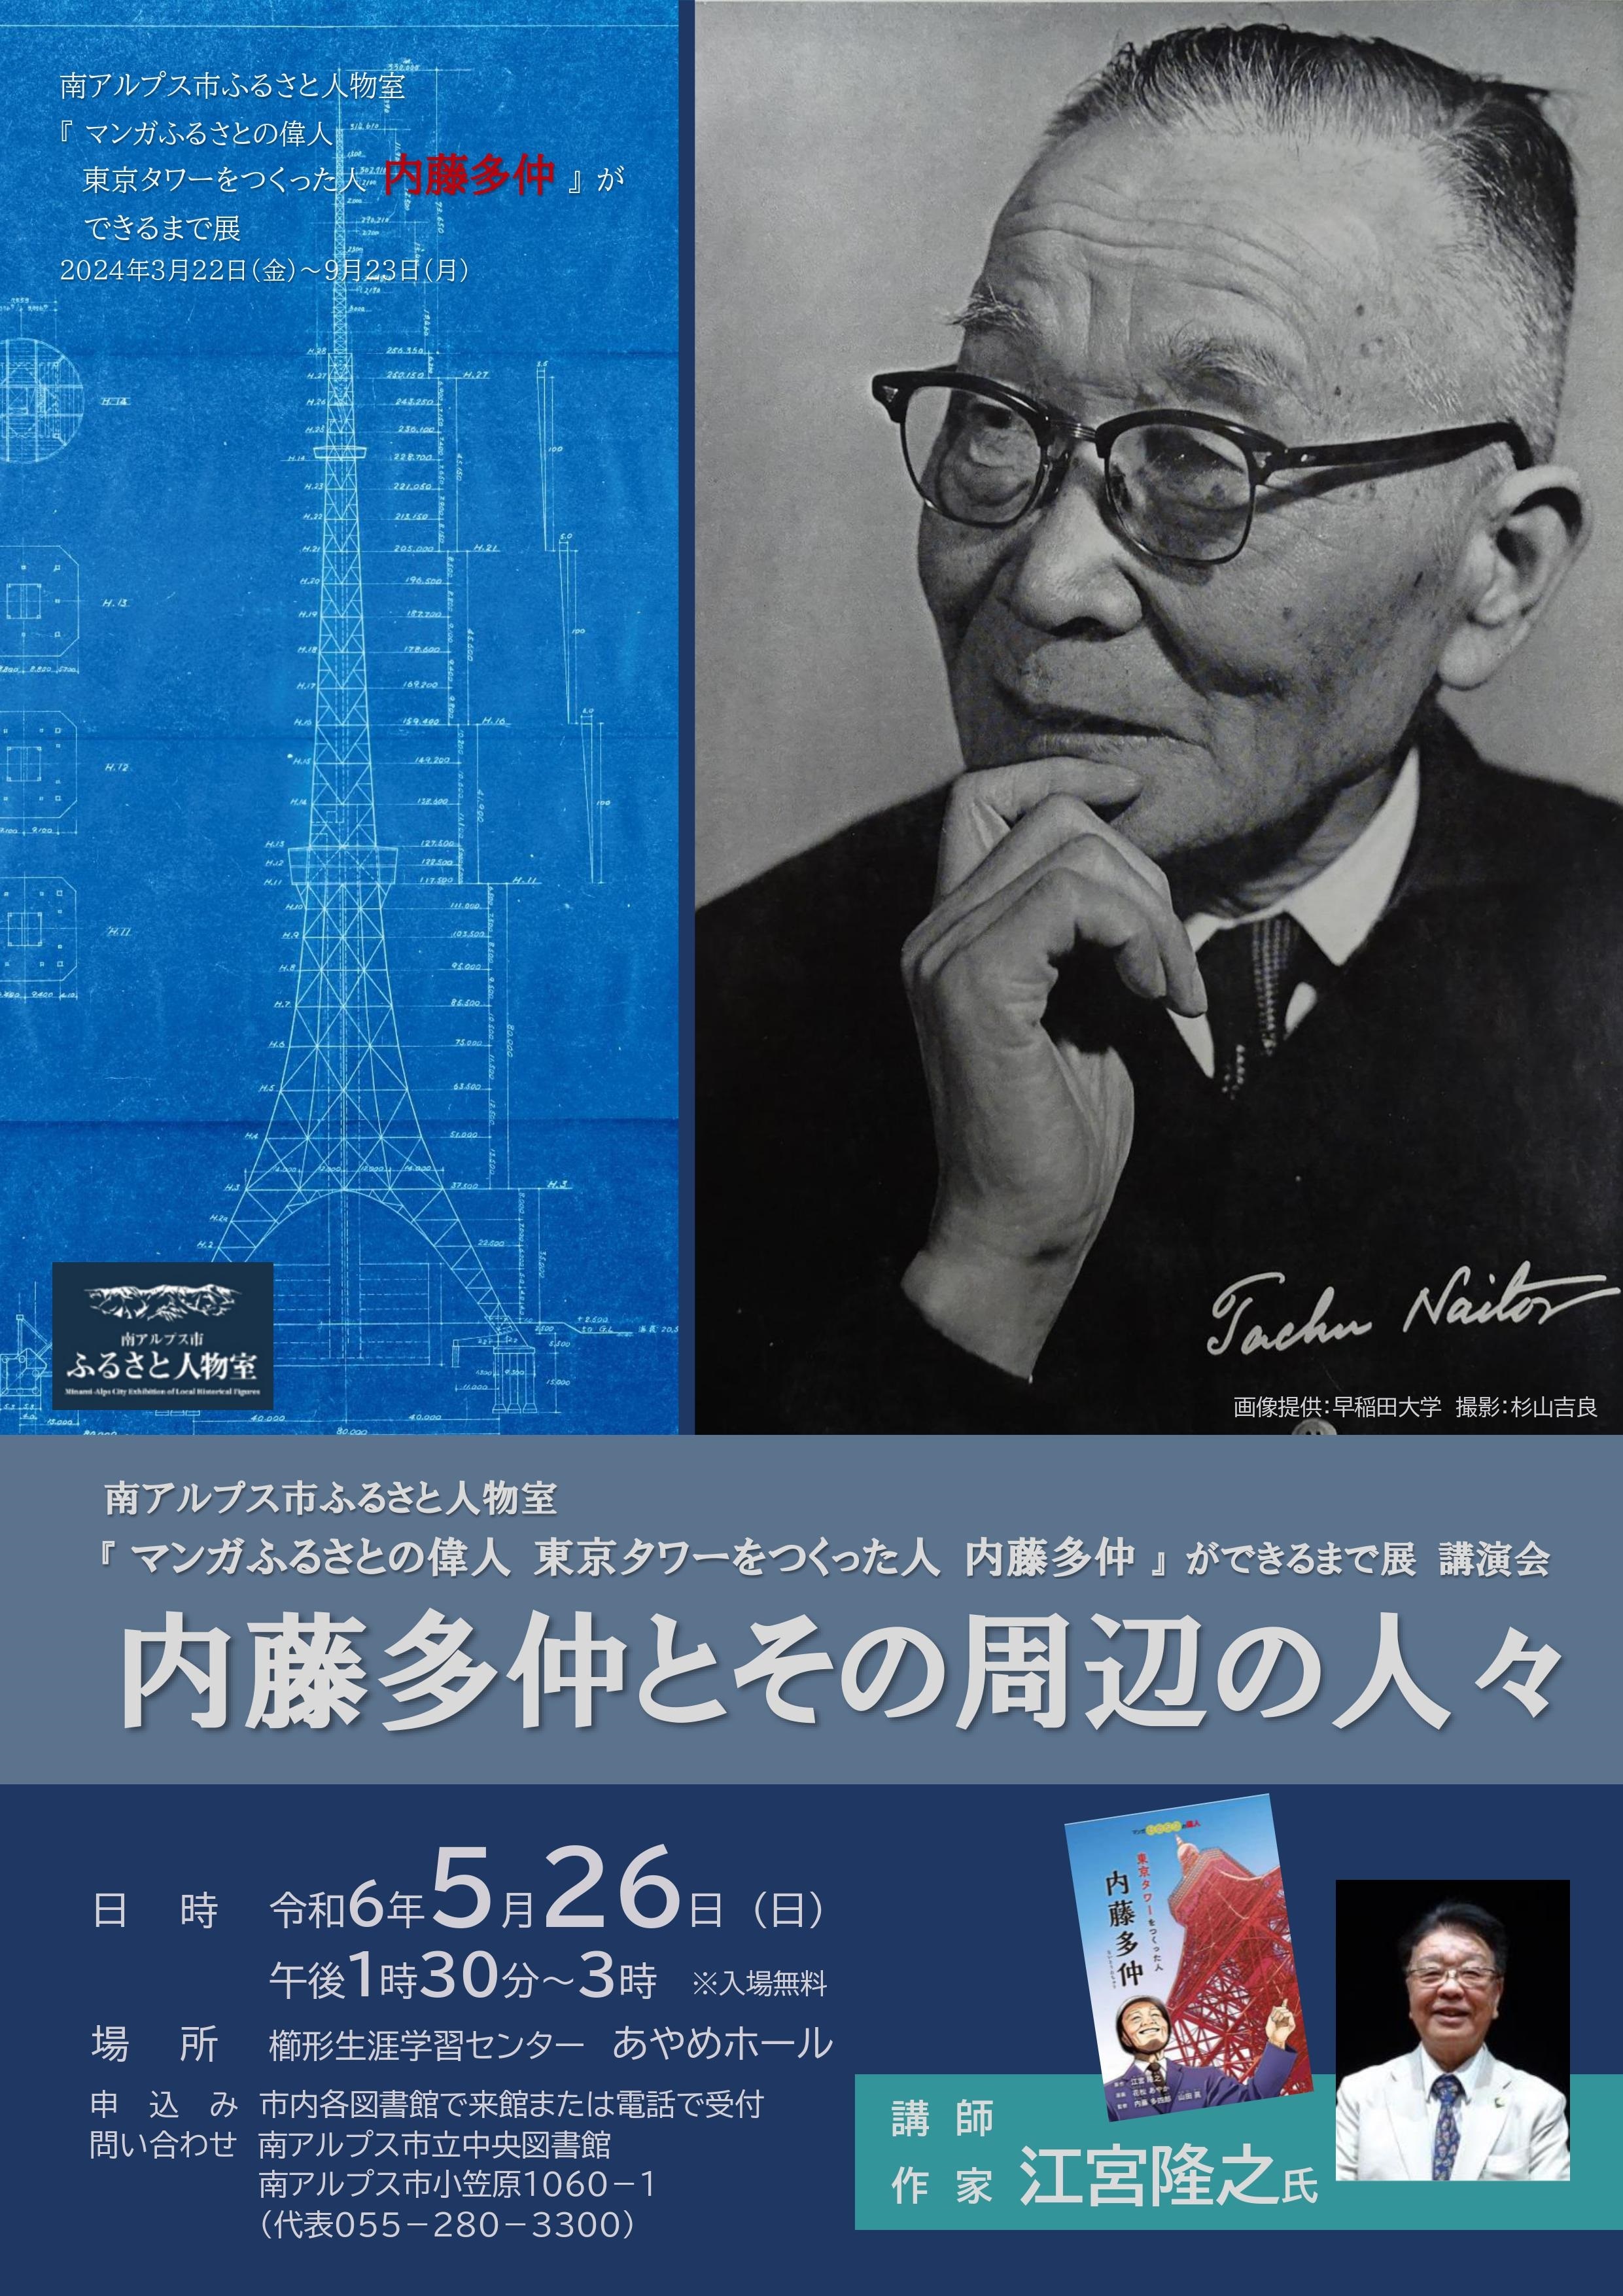 『マンガふるさとの偉人東京タワーをつくった人内藤多仲』ができるまで展講演会　　内藤多仲とその周辺の人々